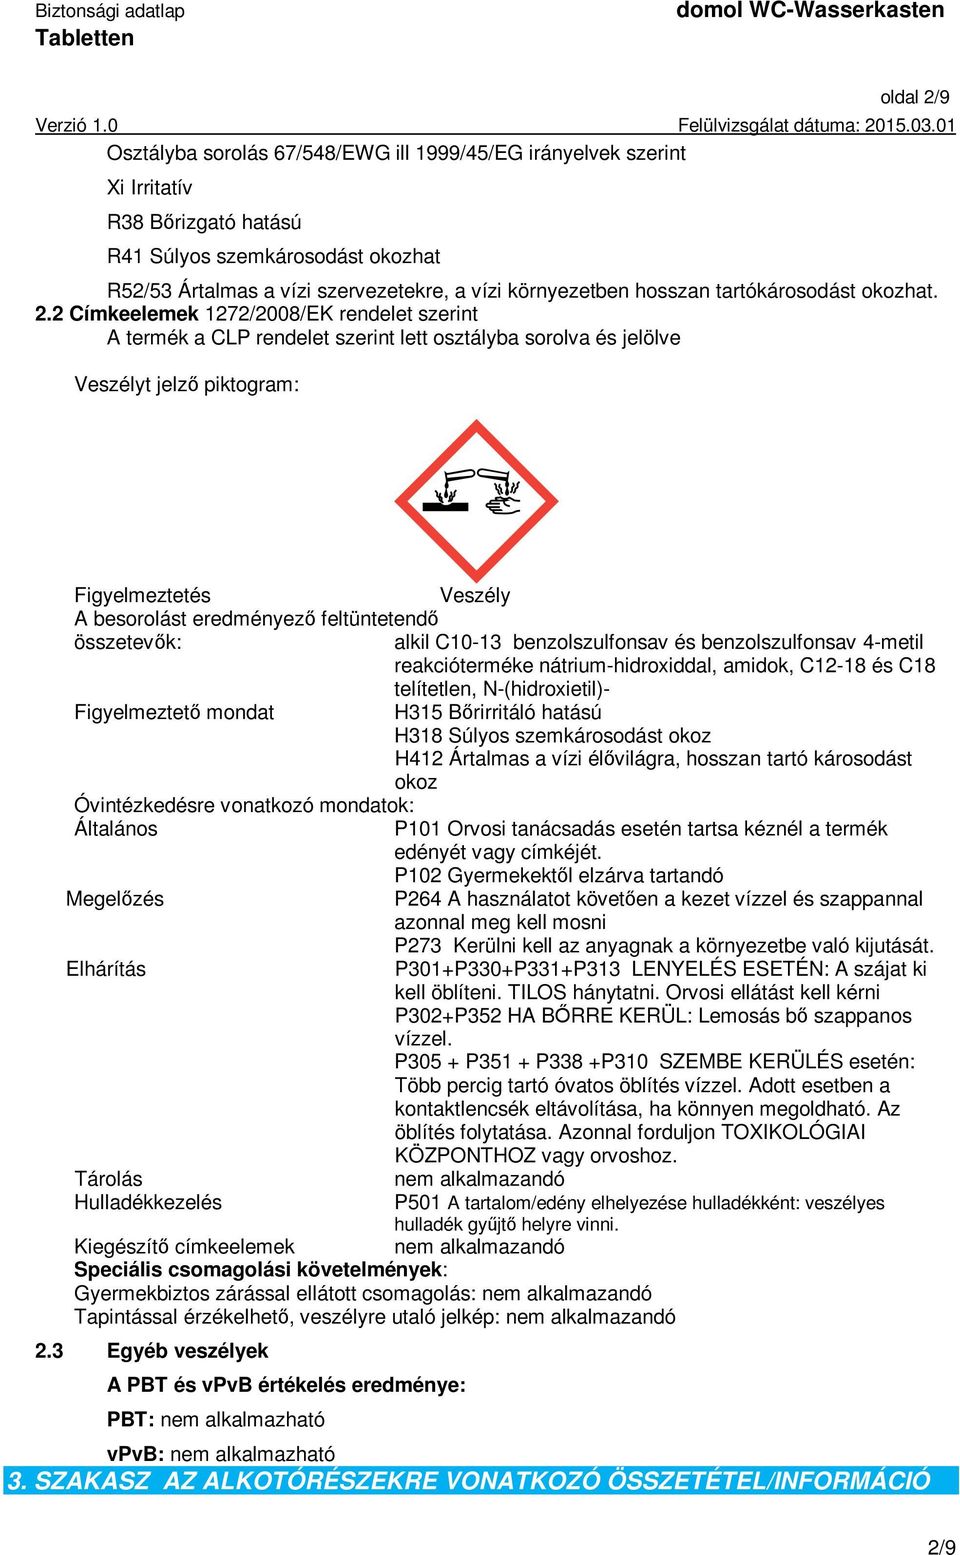 2 Címkeelemek 1272/2008/EK rendelet szerint A termék a CLP rendelet szerint lett osztályba sorolva és jelölve Veszélyt jelző piktogram: Figyelmeztetés Veszély A besorolást eredményező feltüntetendő